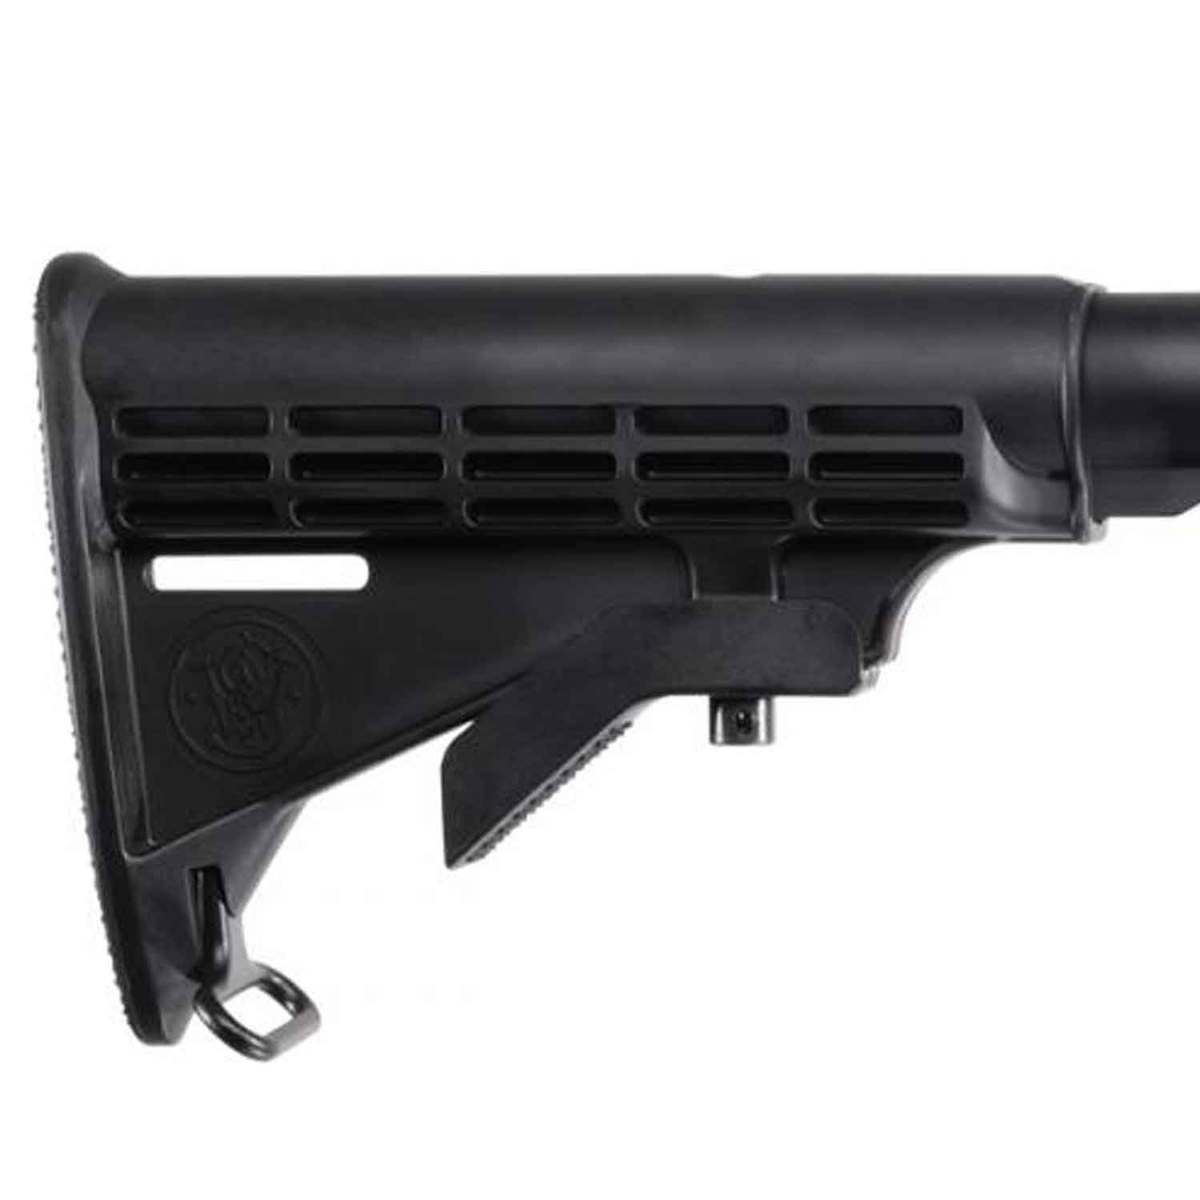 Smith & Wesson M&P15 Sport II Kit 5.56mm NATO 16in Black Semi Automatic ...